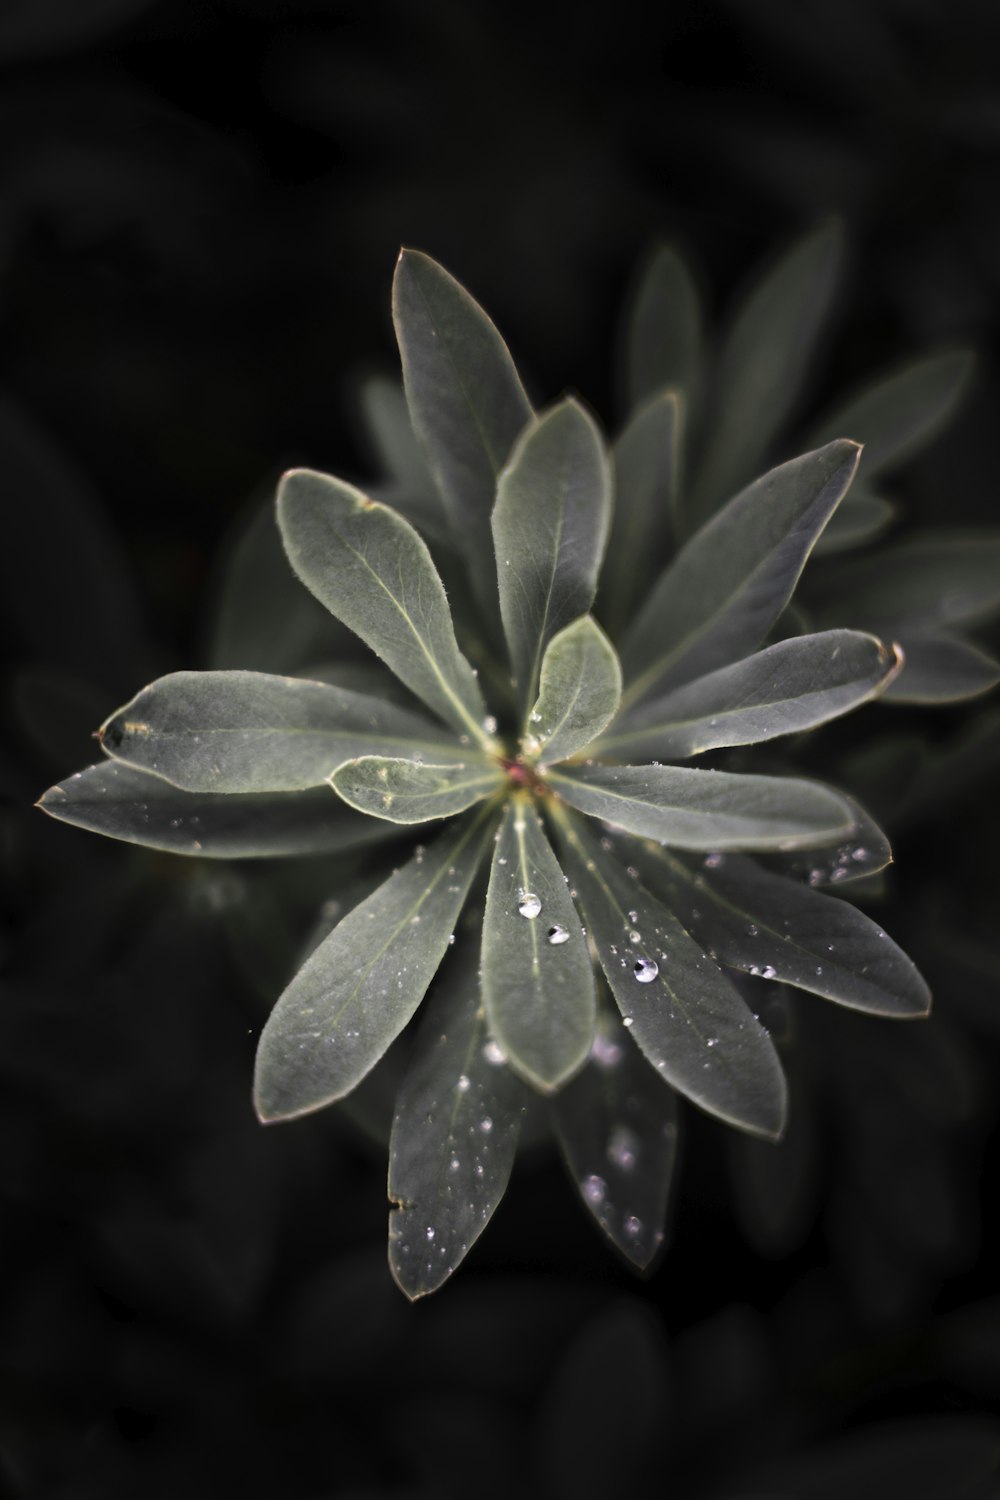 um close up de uma flor com gotas de água sobre ela